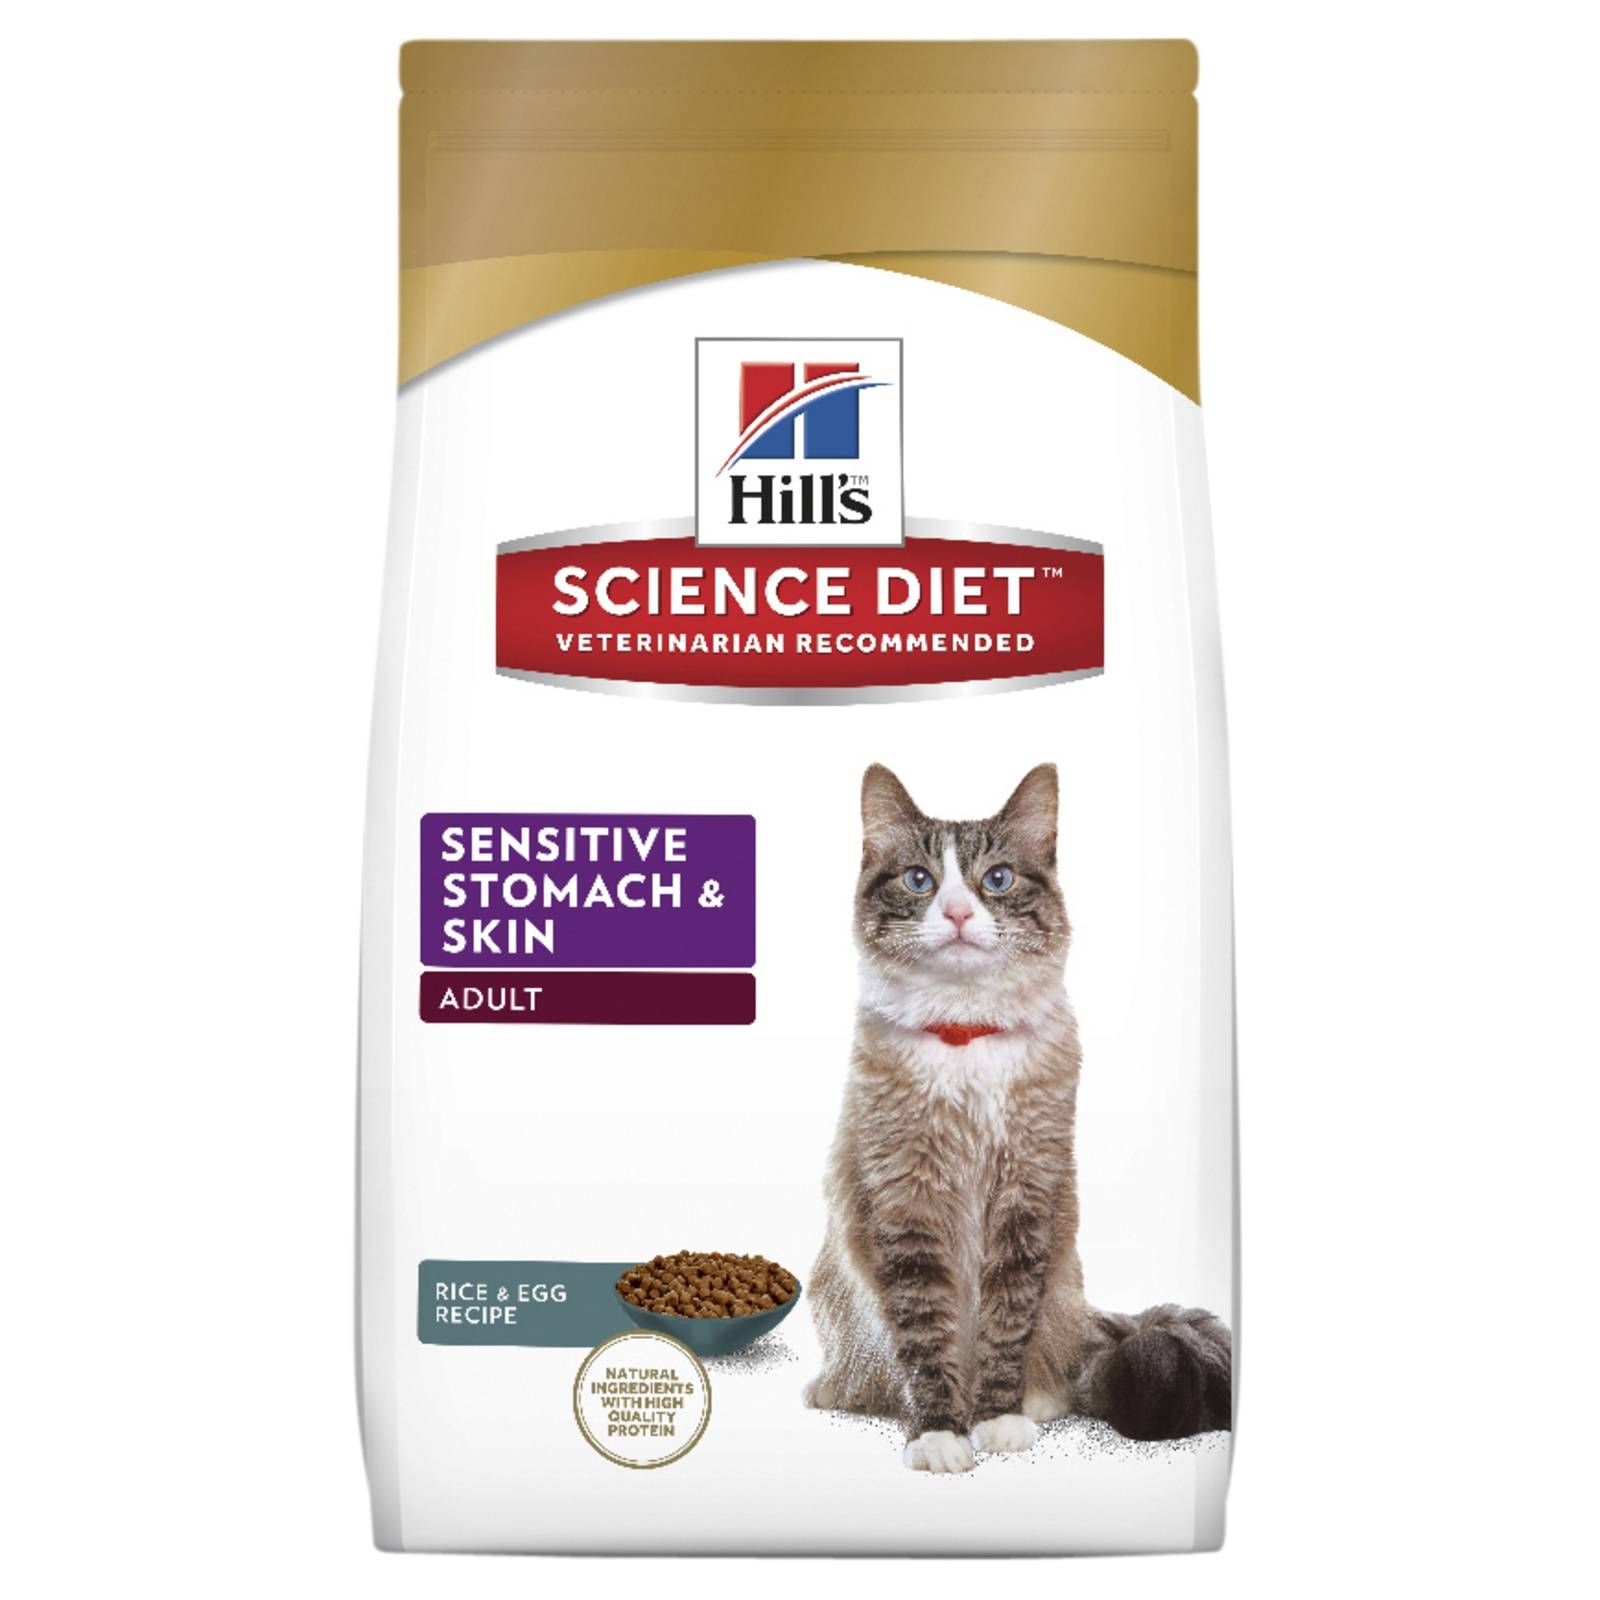 Hills сухие лечебные корма для кошек